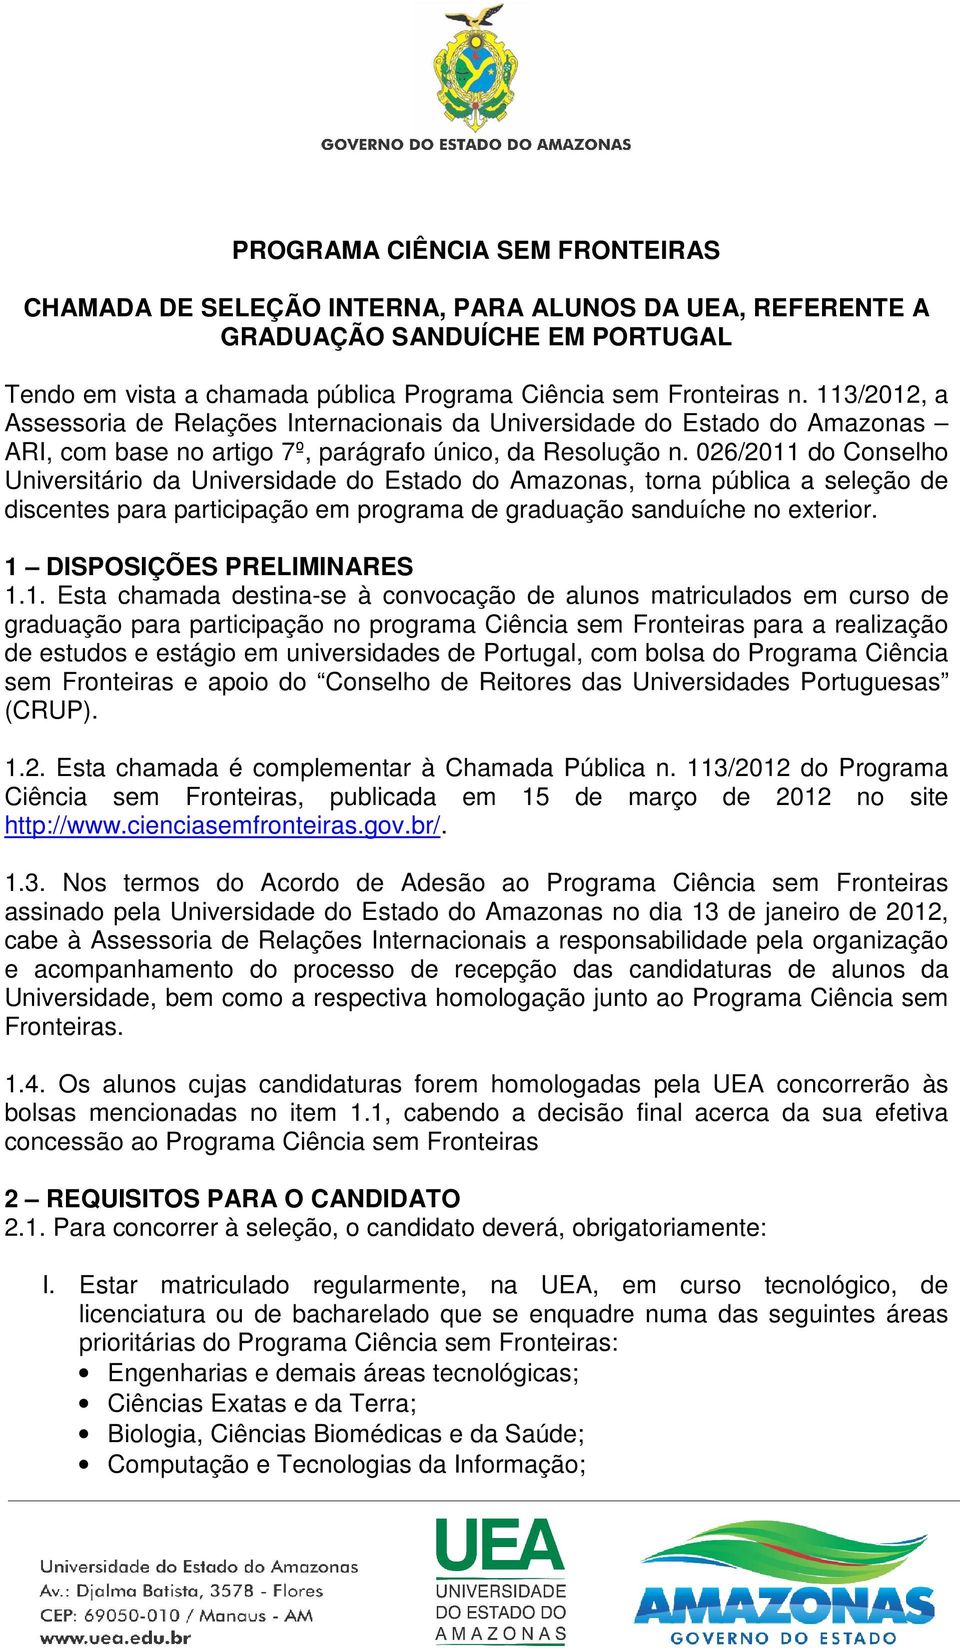 026/2011 do Conselho Universitário da Universidade do Estado do Amazonas, torna pública a seleção de discentes para participação em programa de graduação sanduíche no exterior.